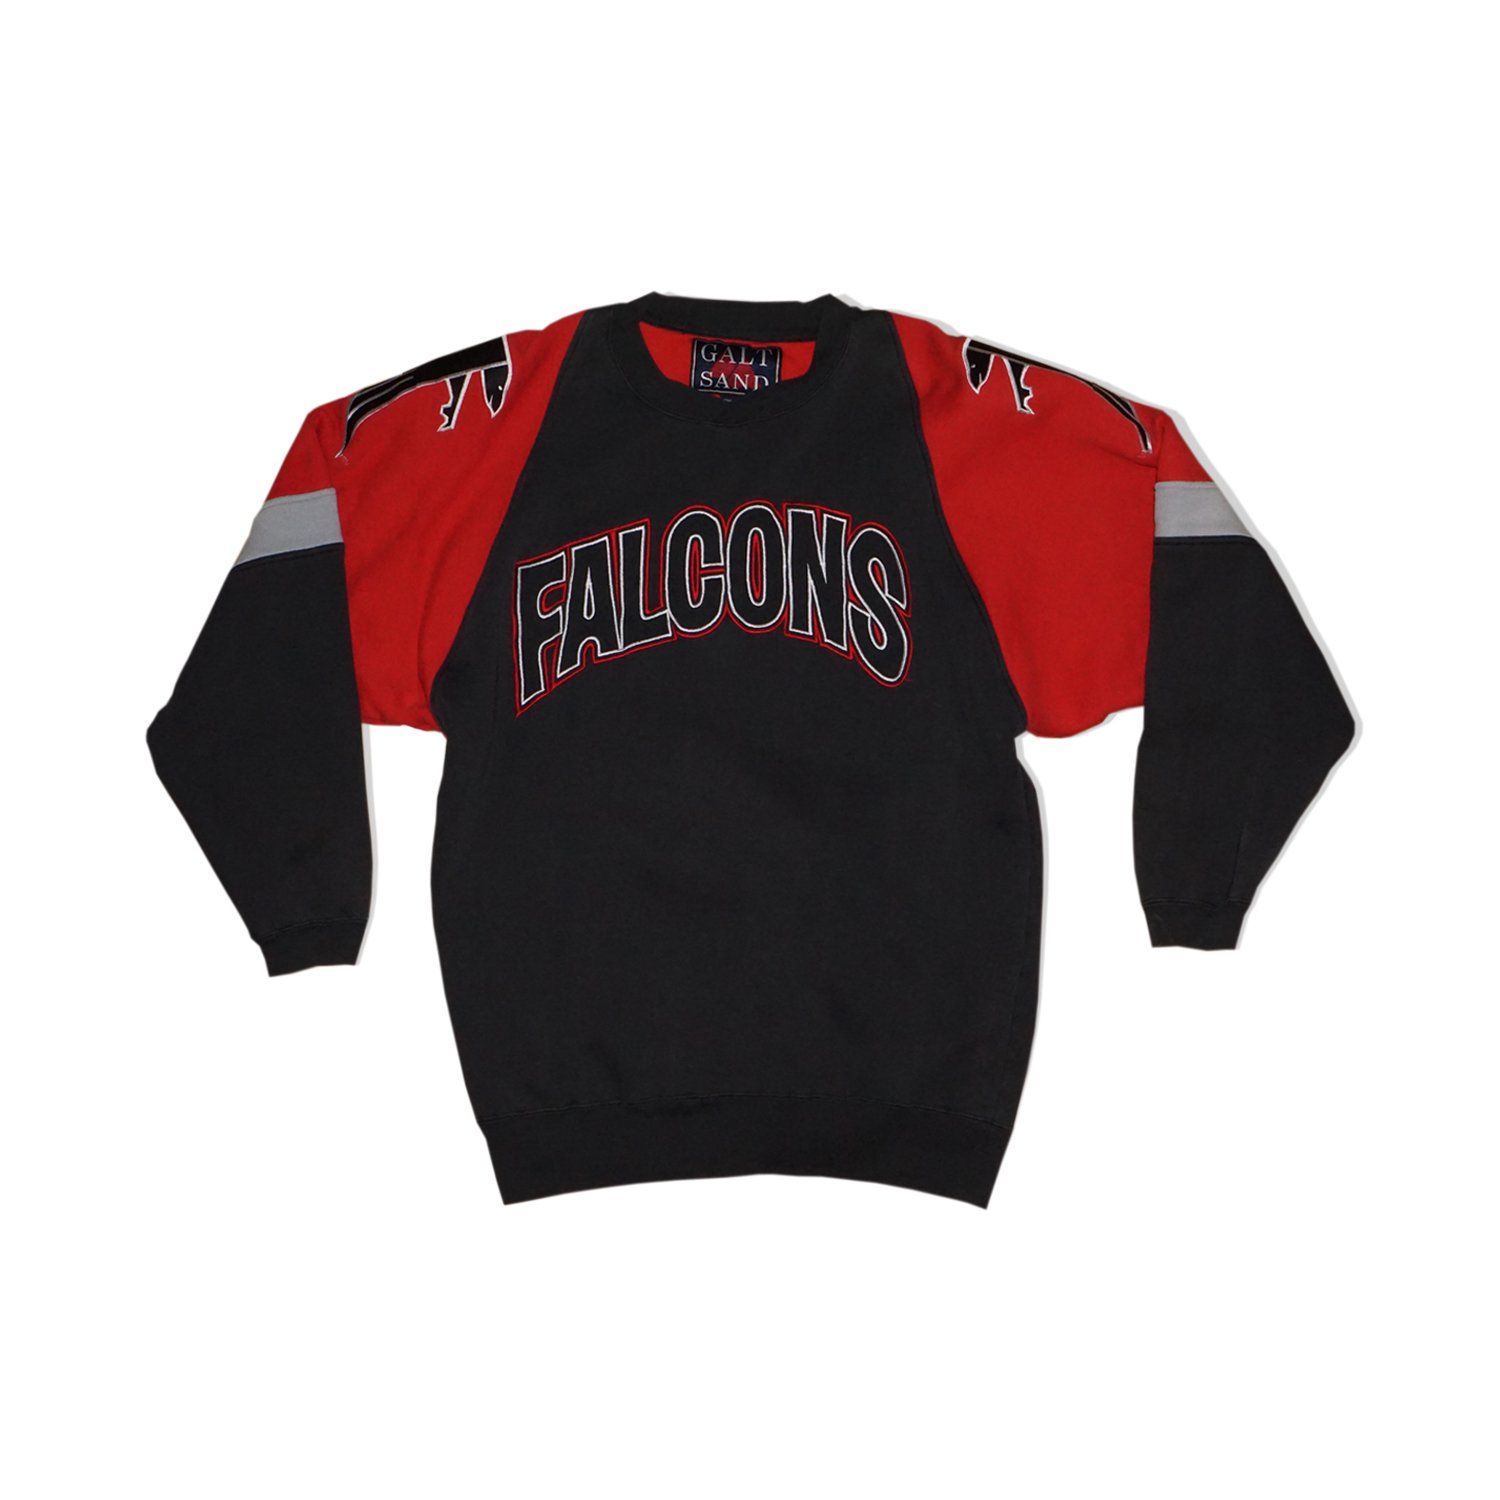 1990s Atlanta Falcons Vintage Crewneck